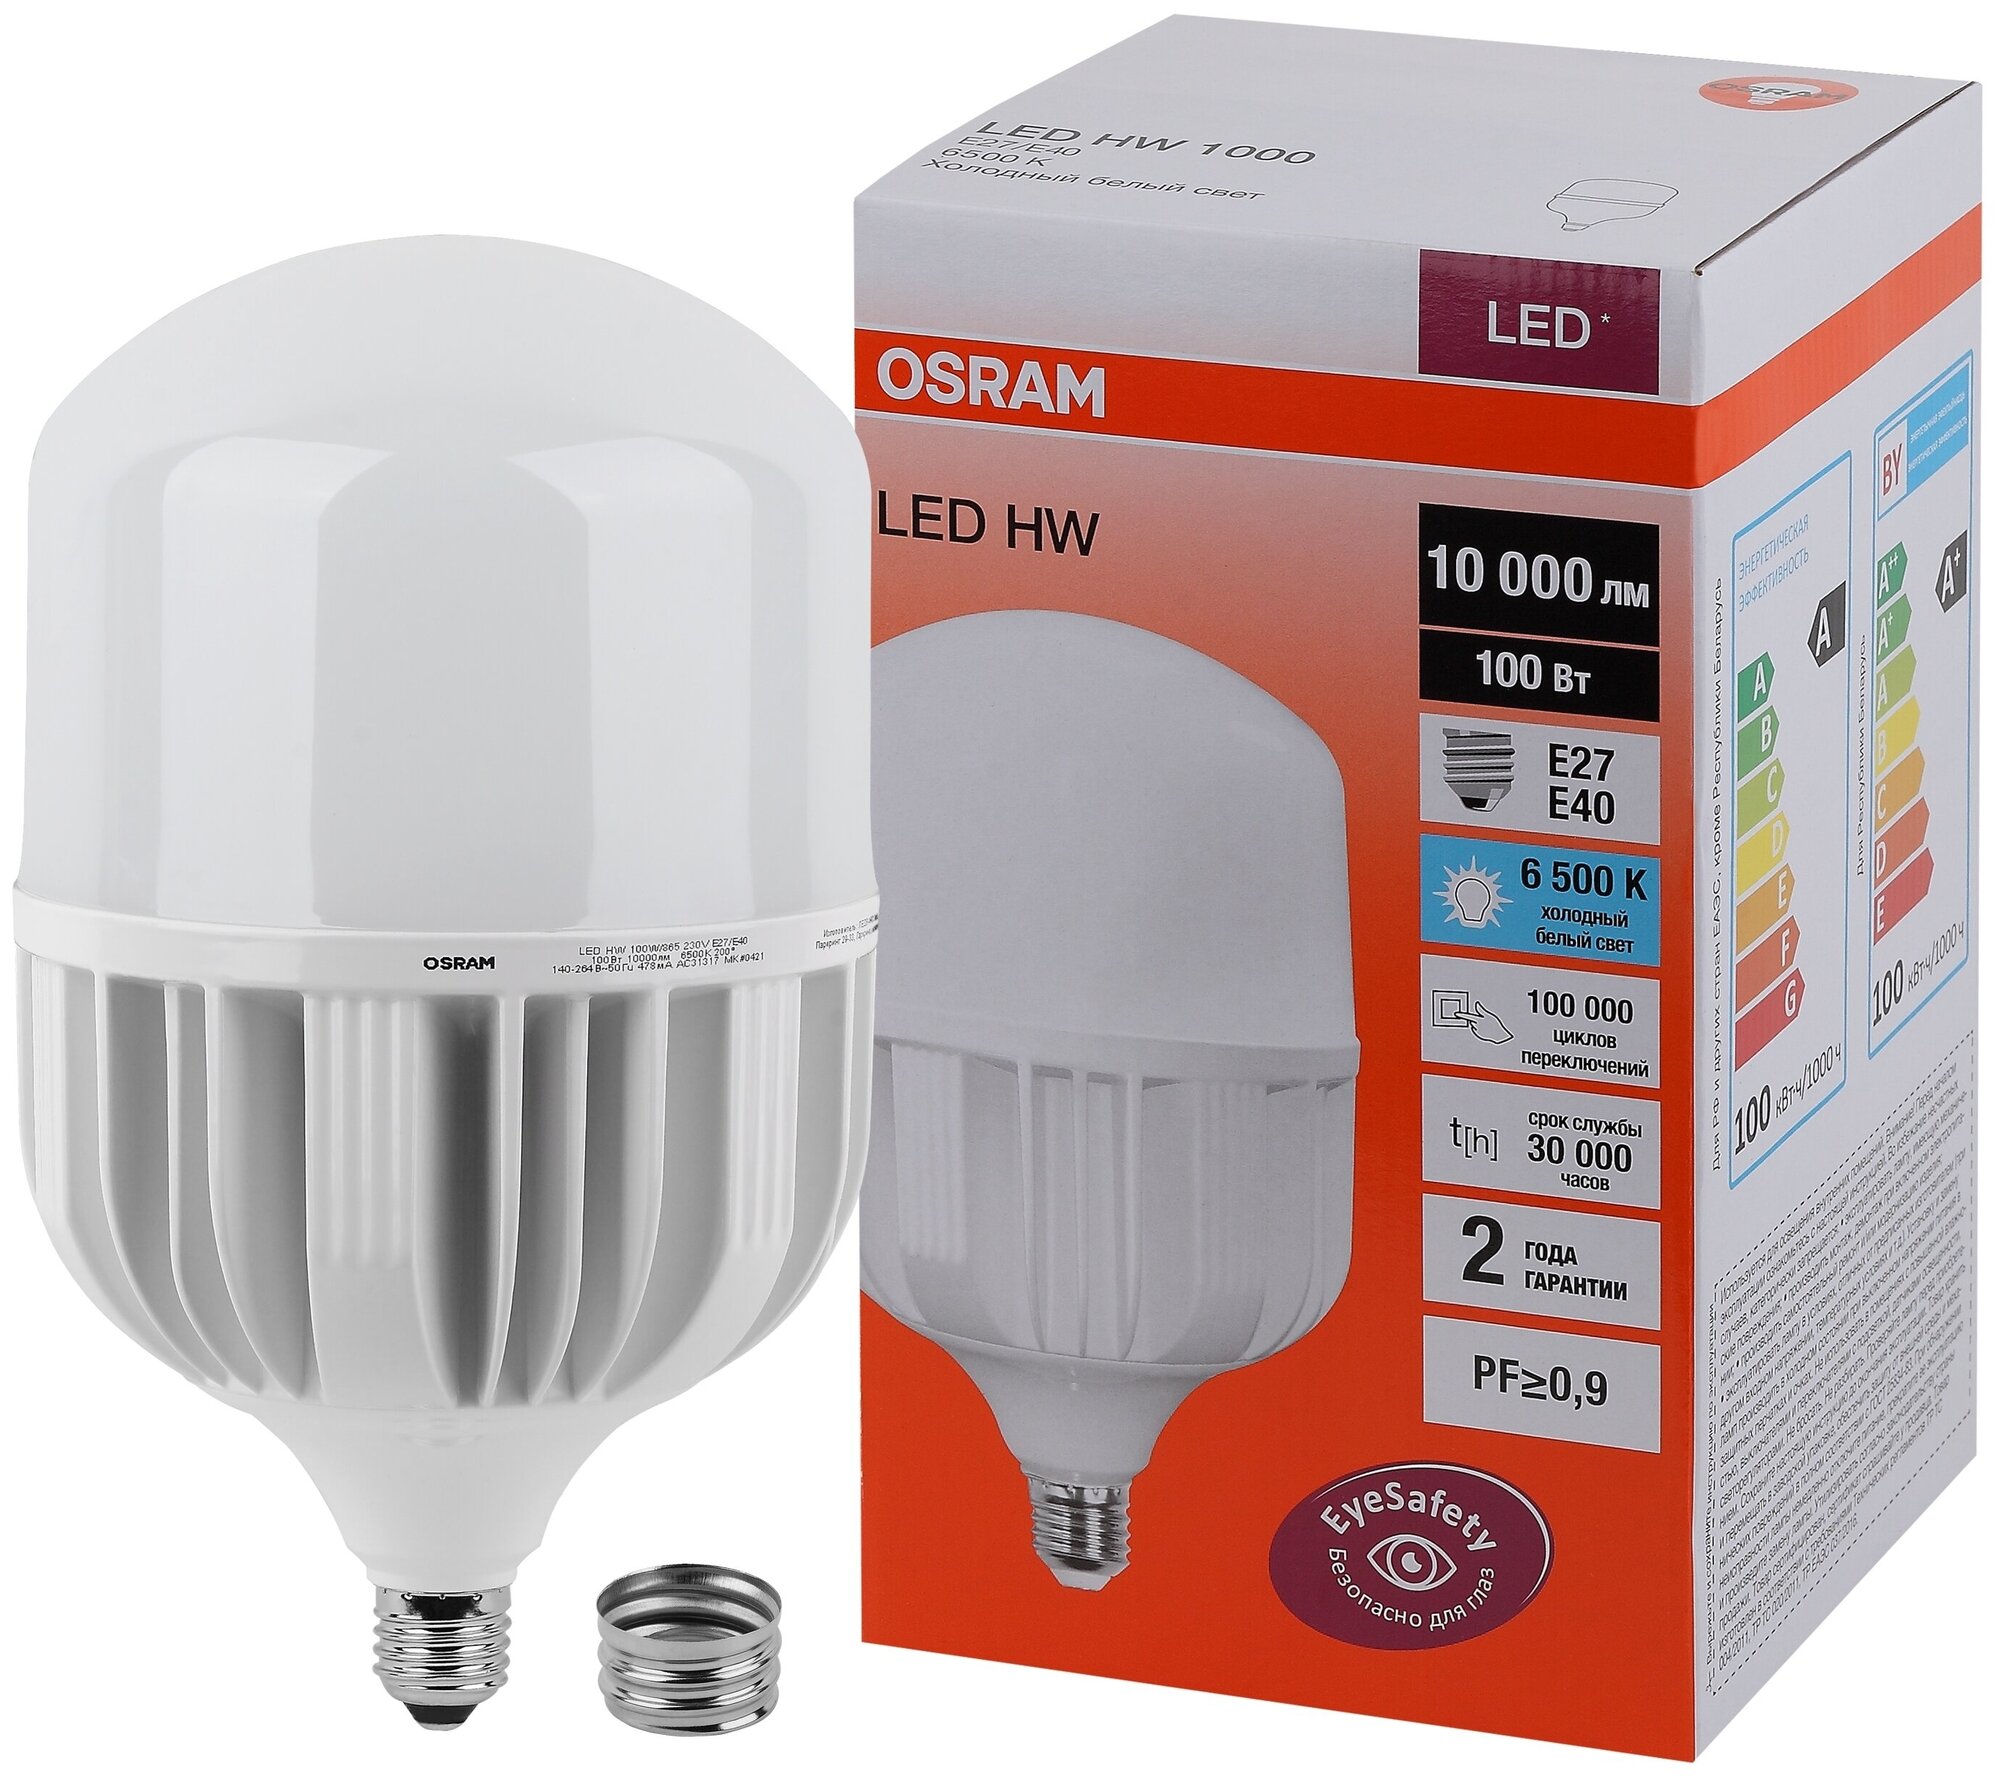 LED HW 100W/865 230V E27/E40 10000lm - лампа OSRAM+адаптор